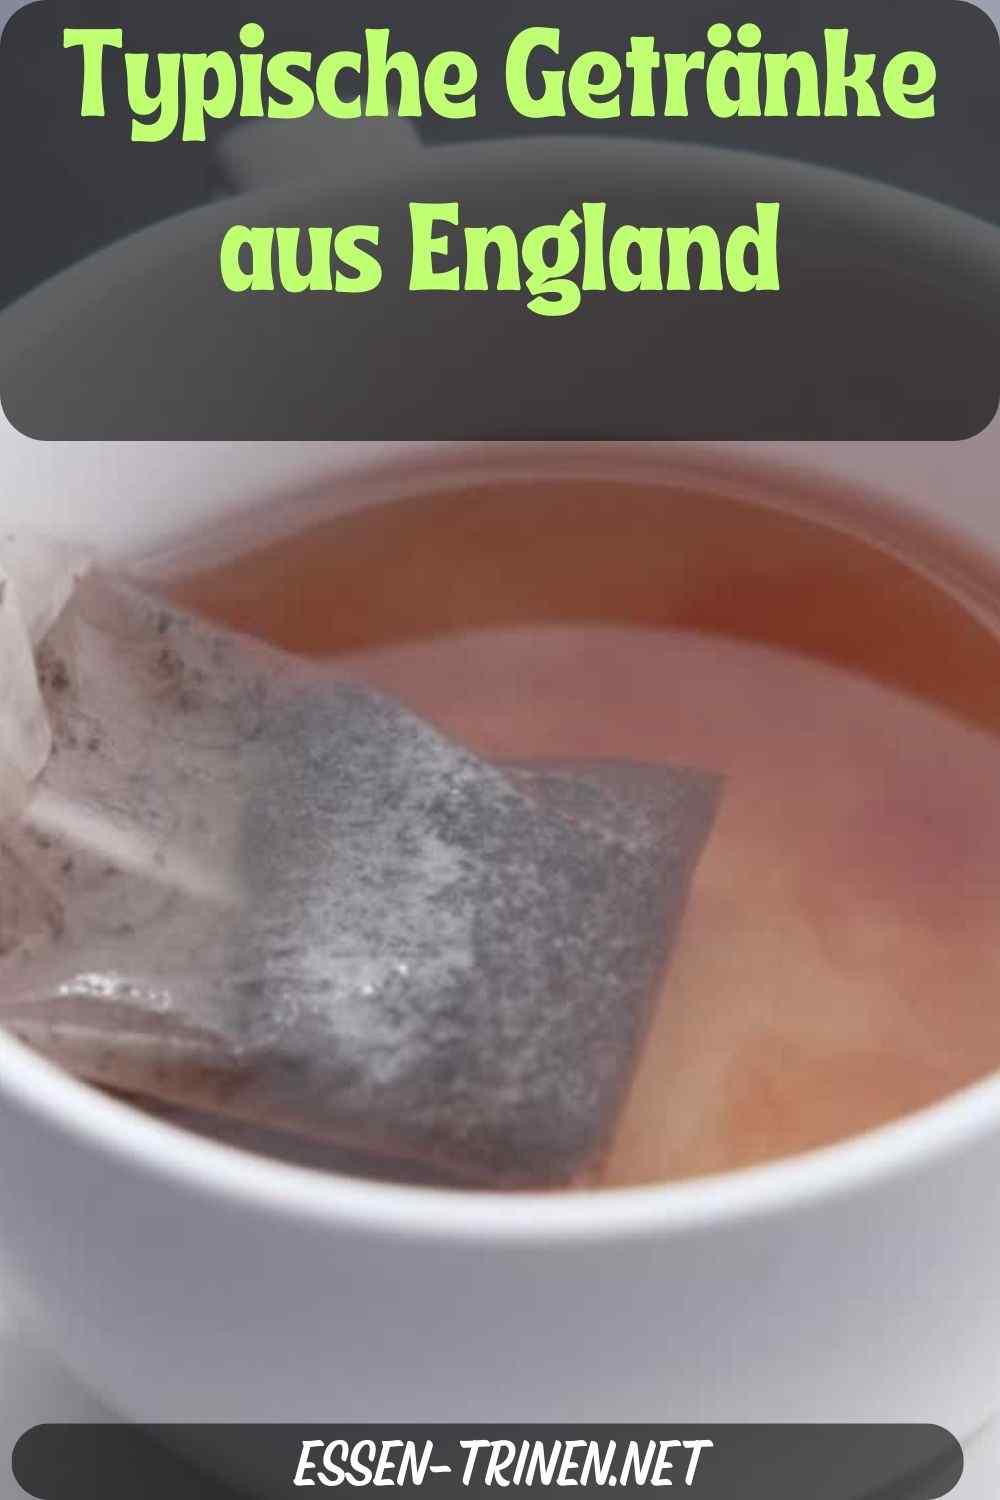 Typische Getränke aus England - Liste